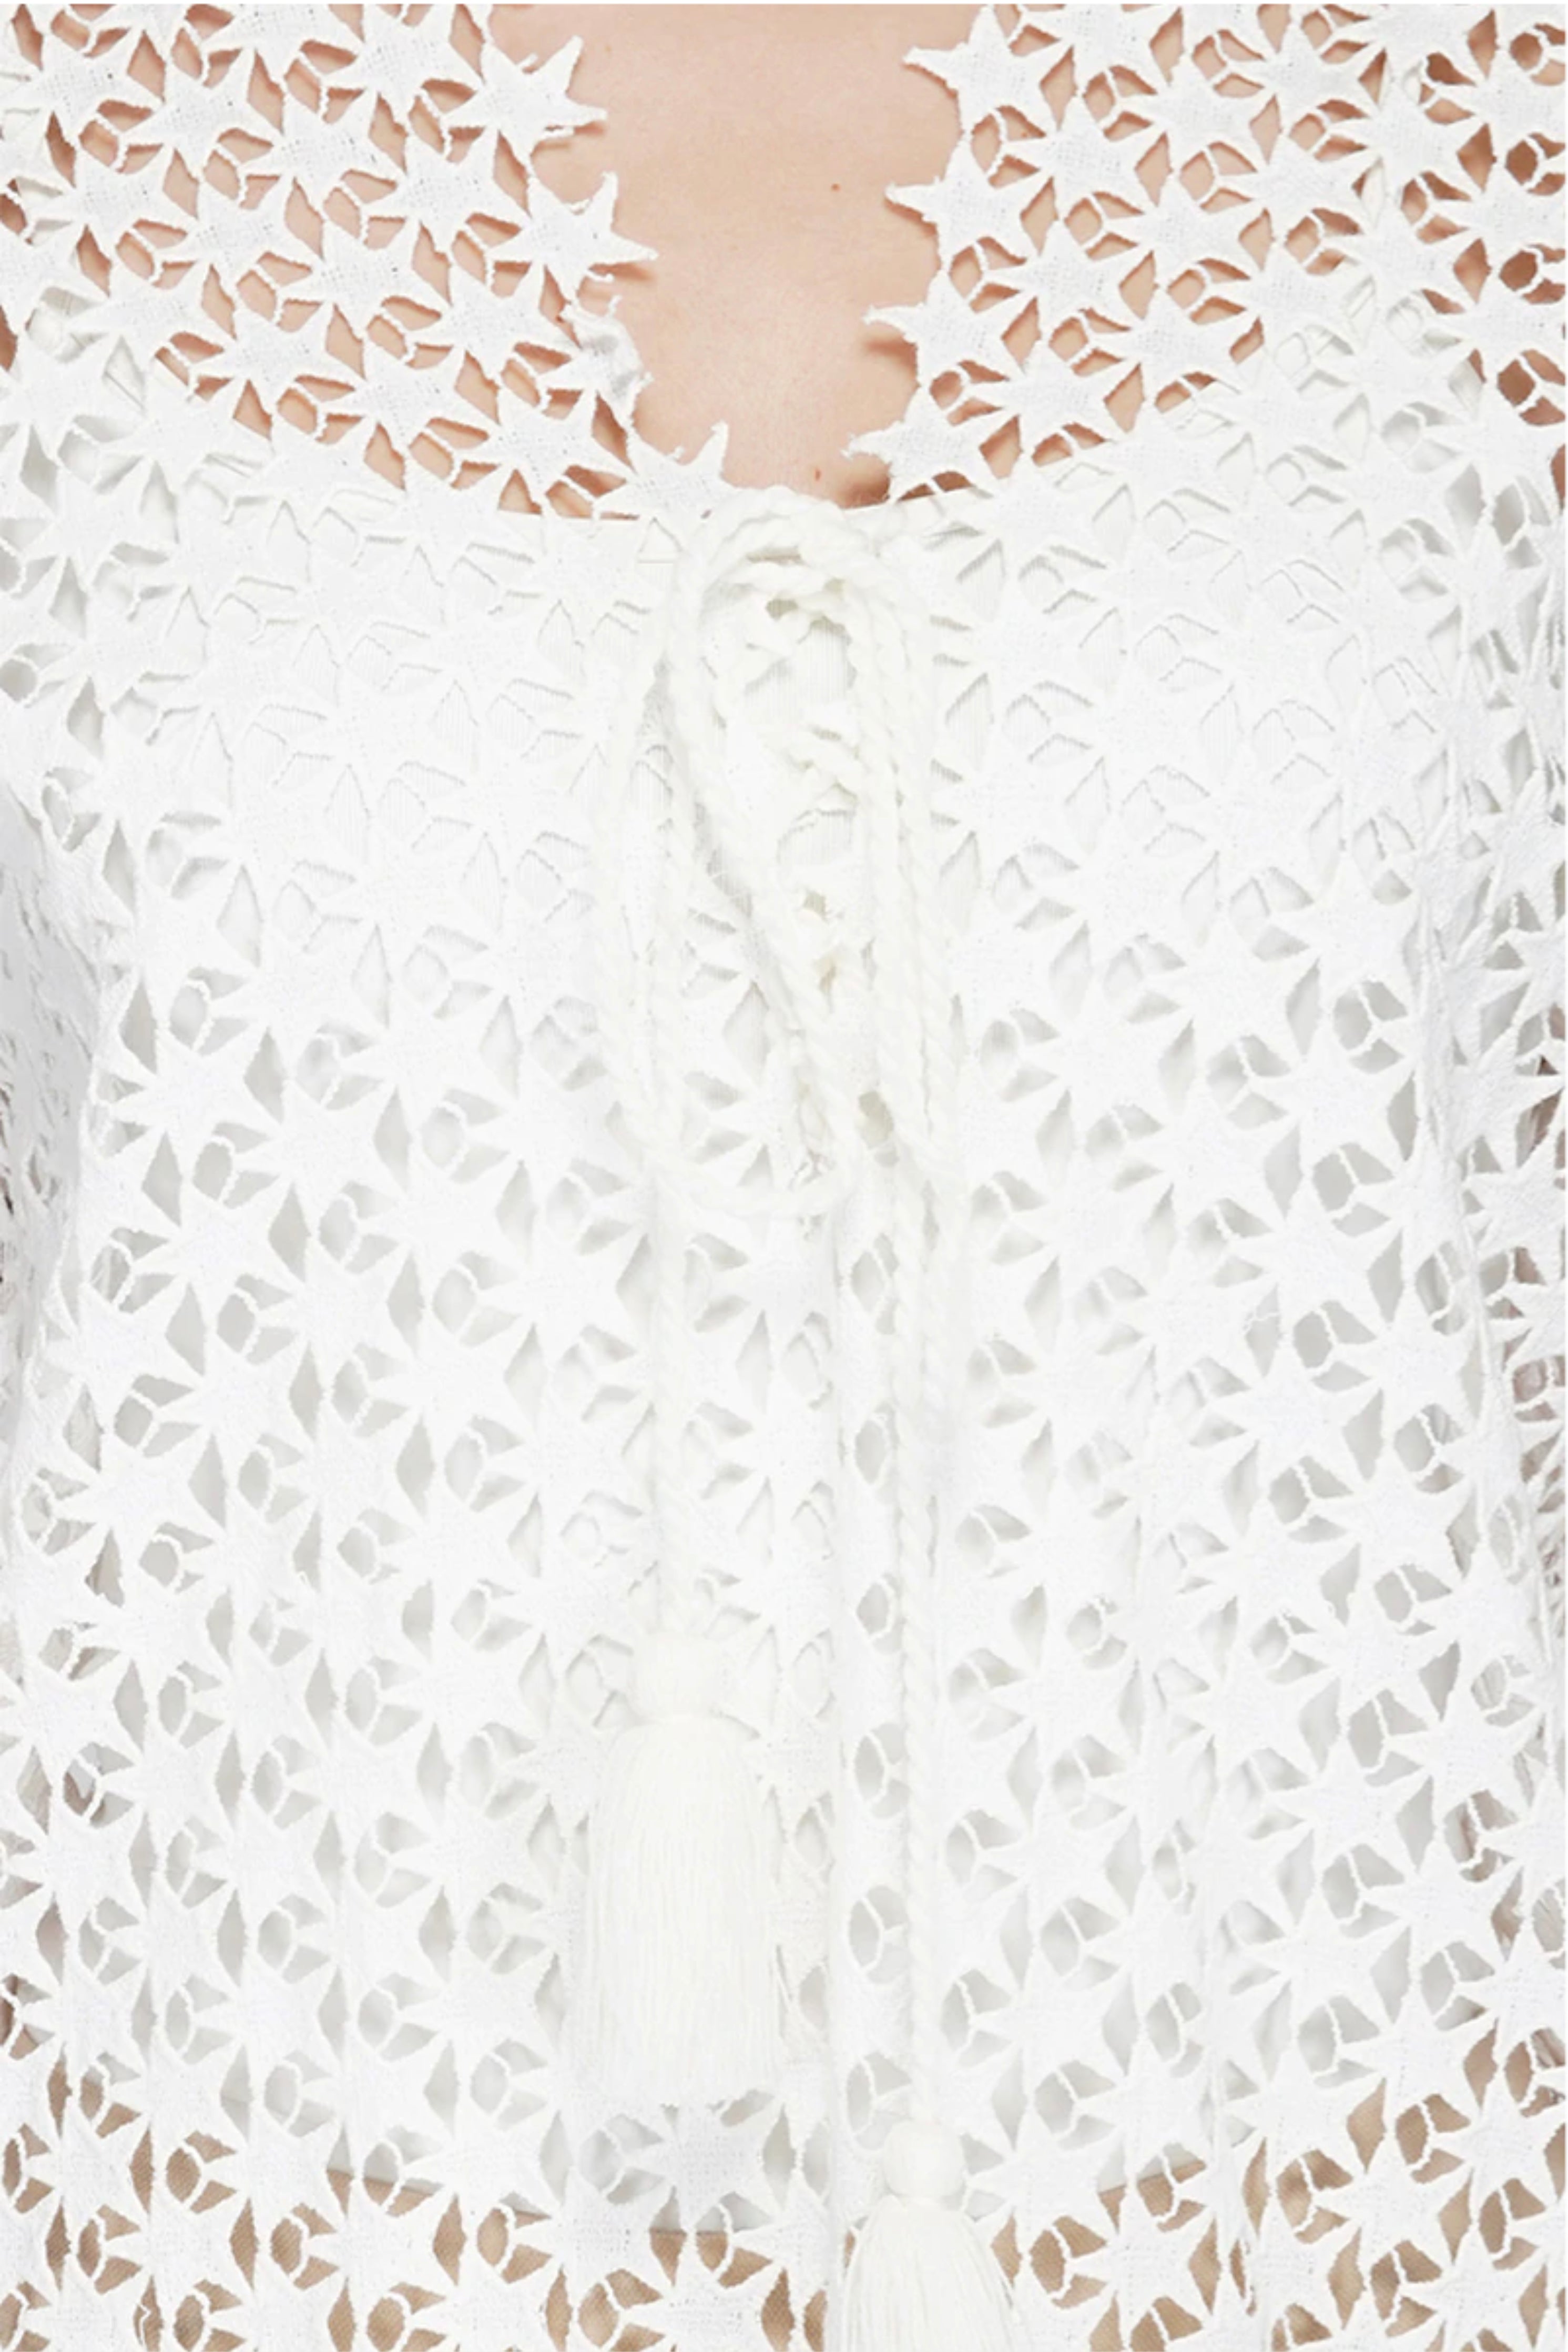 Whisper White Starry Crochet Tunic